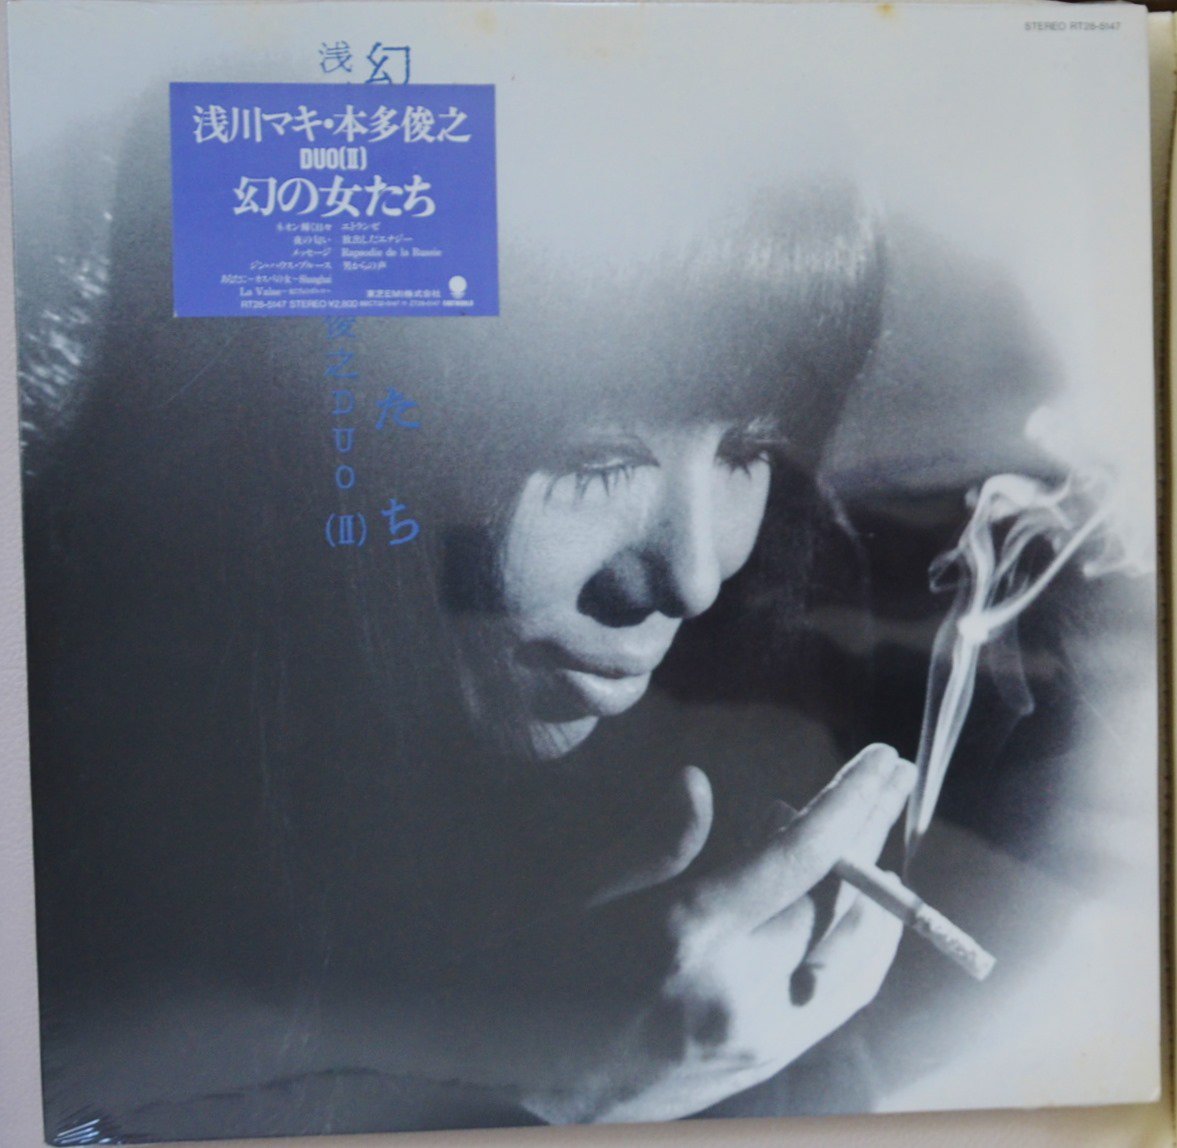 浅川マキ・本多俊之 DUO (II) (MAKI ASAKAWA・TOSHIYUKI HONDA) / 幻の女たち (LP)